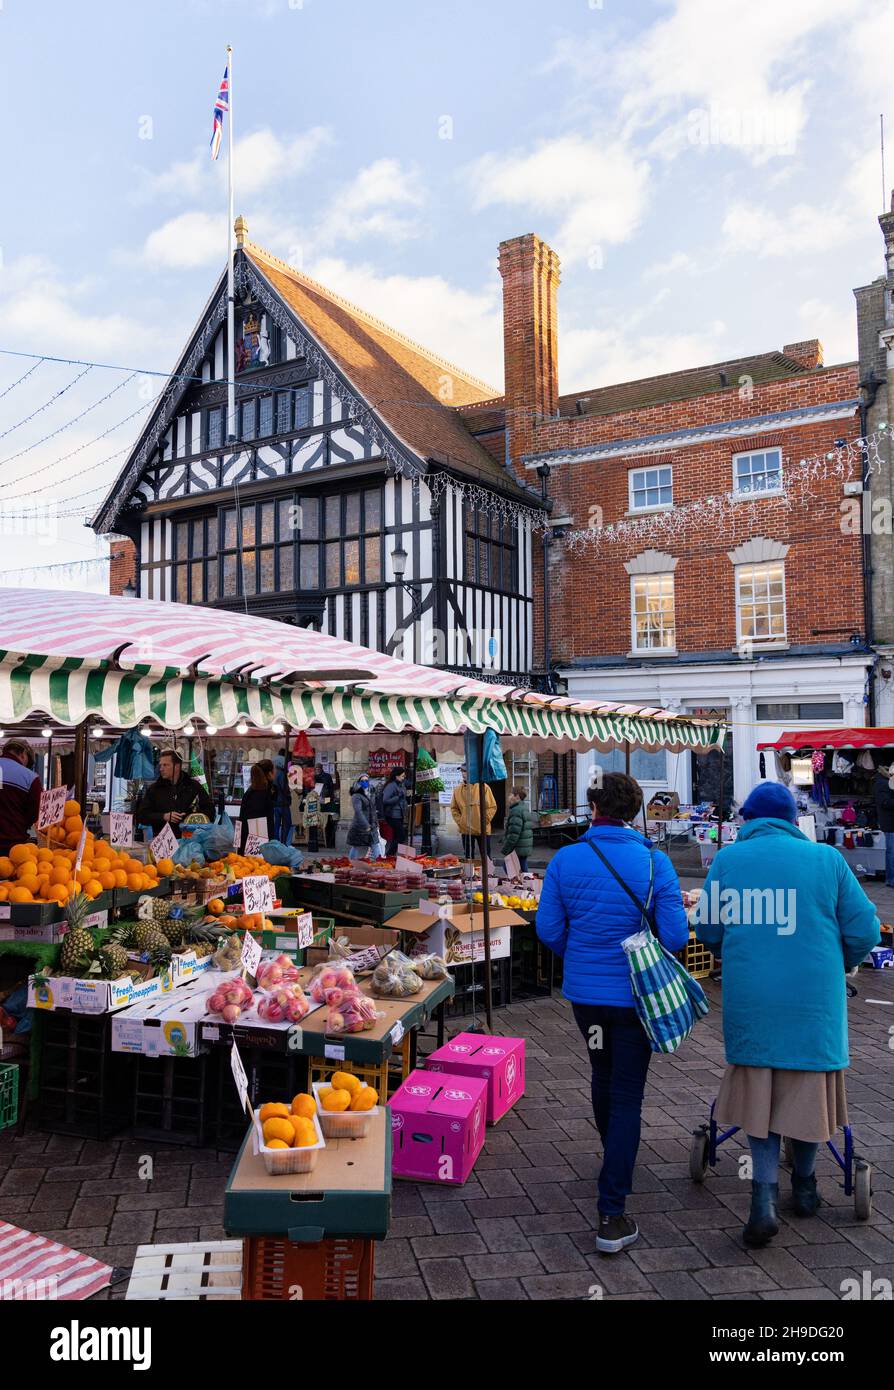 Traditionelle englische Marktstadt; Leute, die an den Marktständen am Saffron Walden Market Square, im Stadtzentrum, Saffron Walden, Essex UK einkaufen Stockfoto